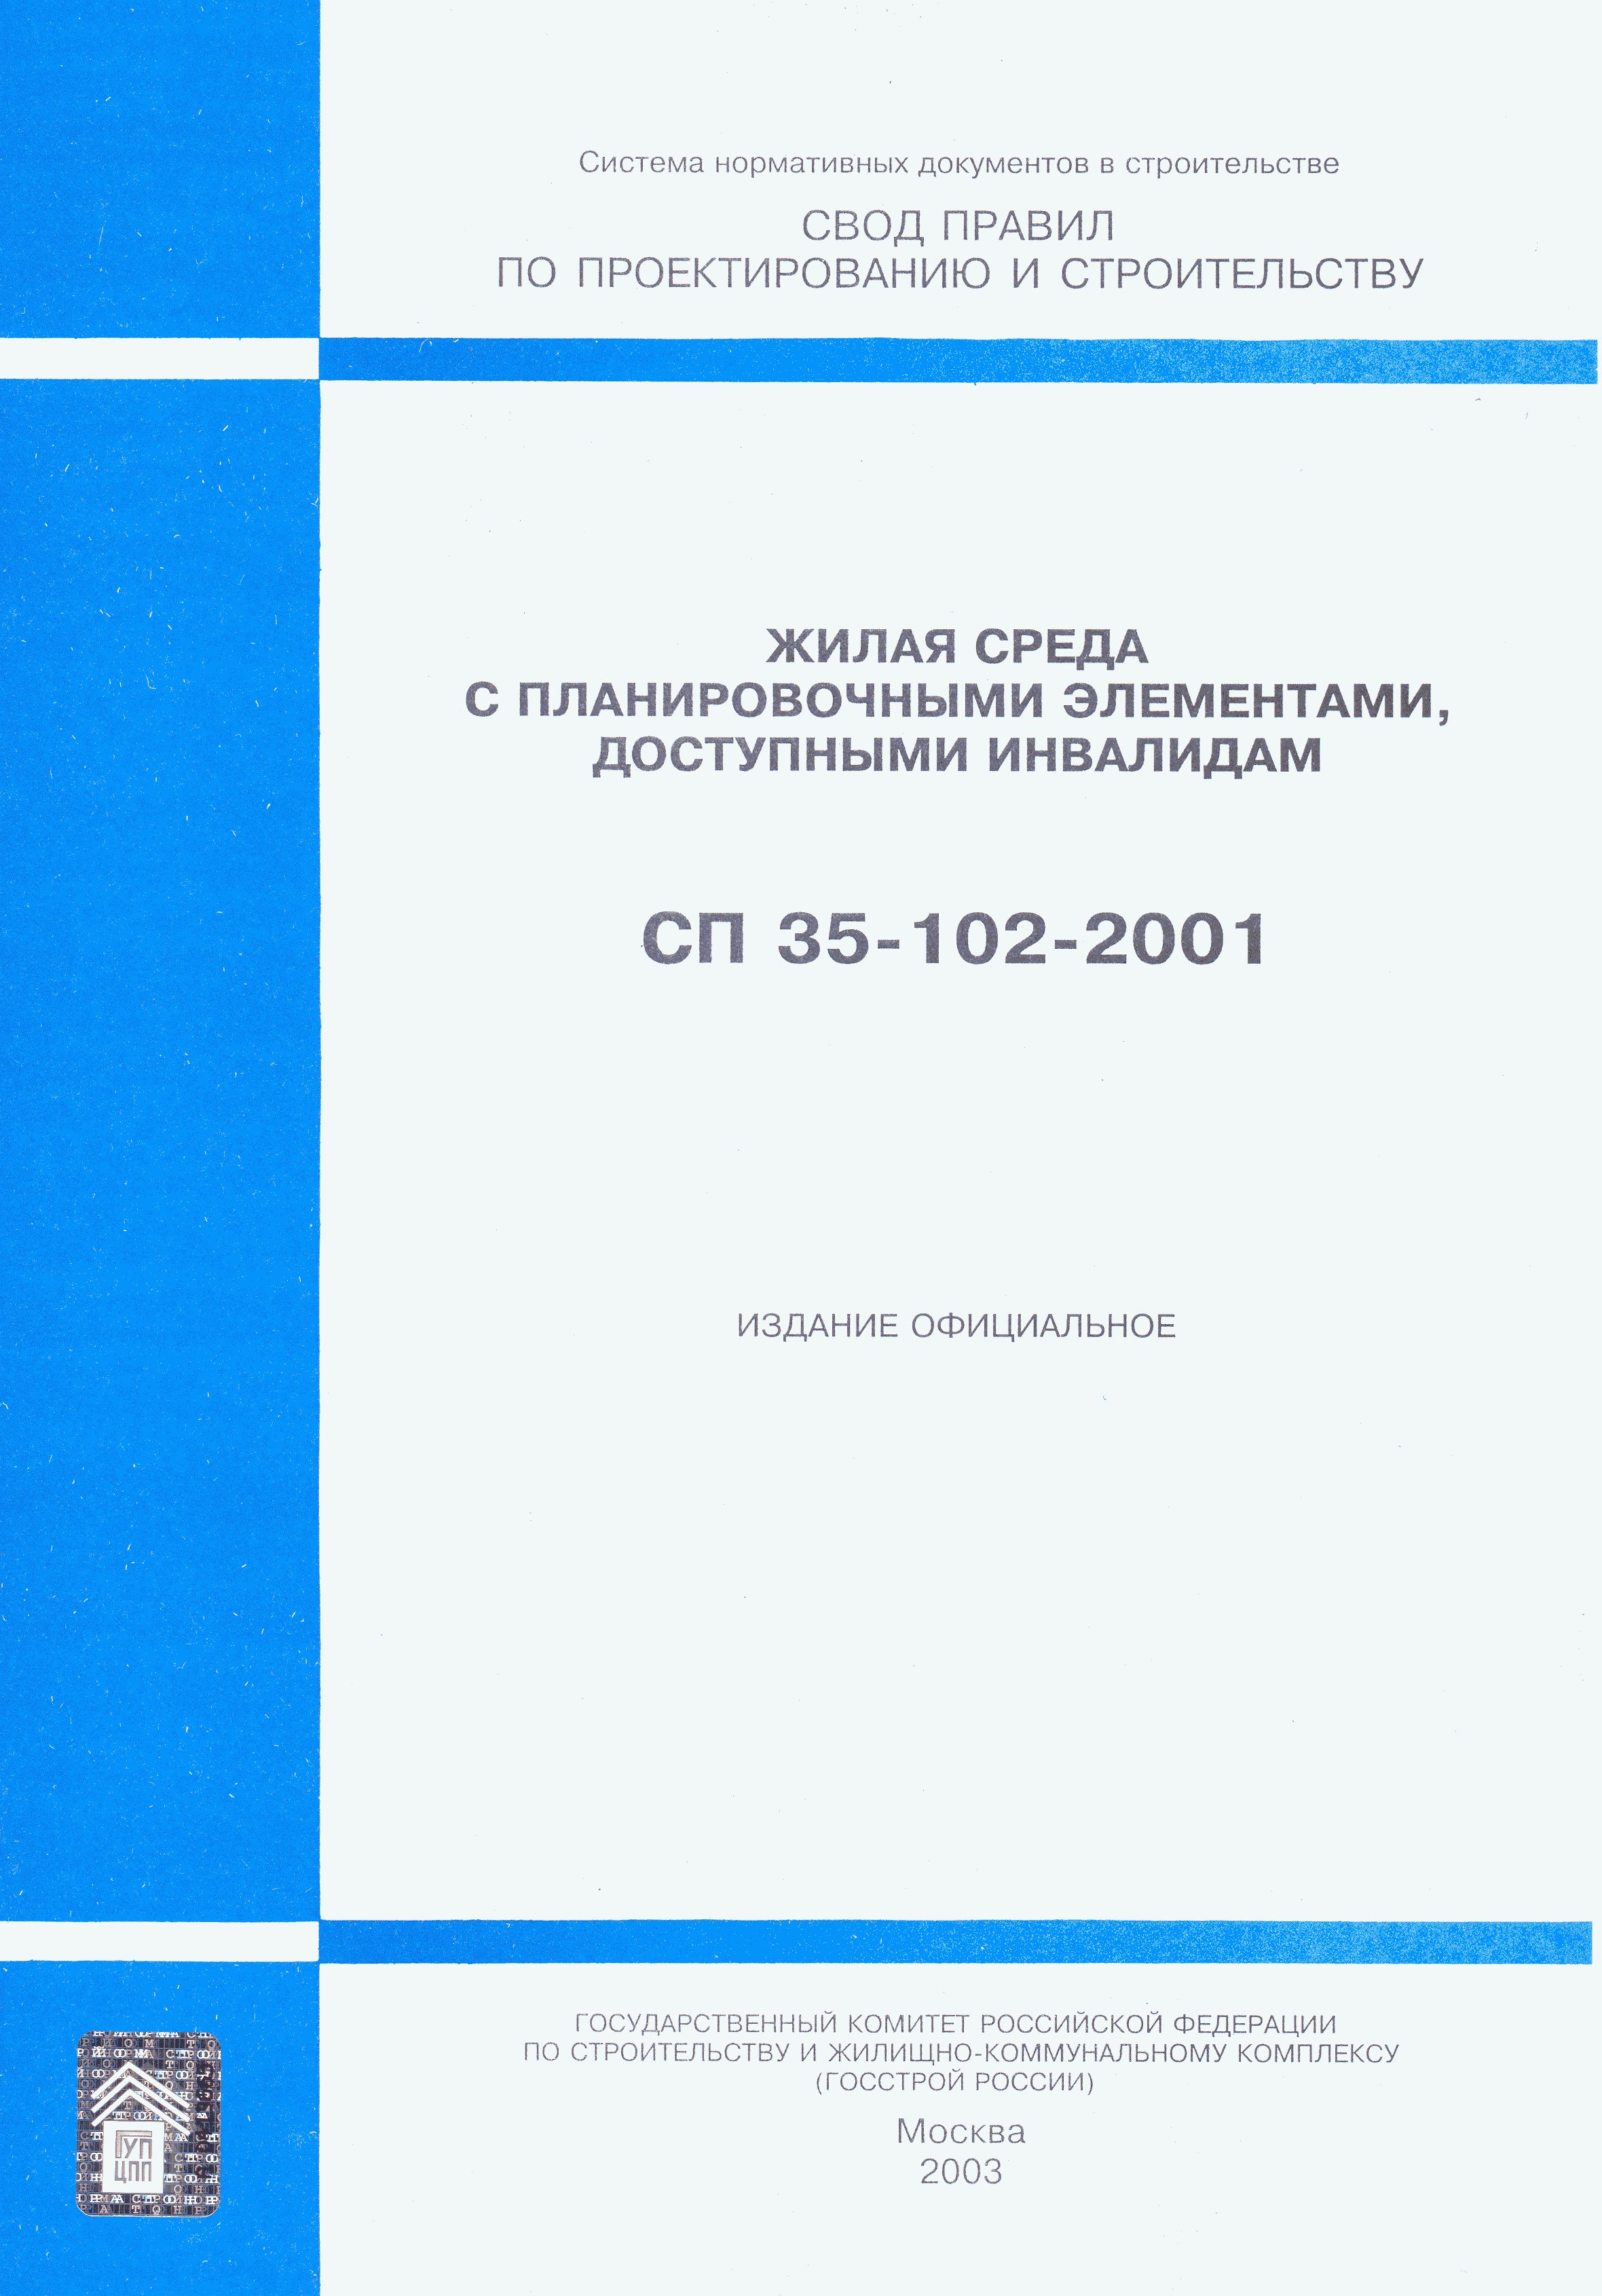 СП 35-102-2001